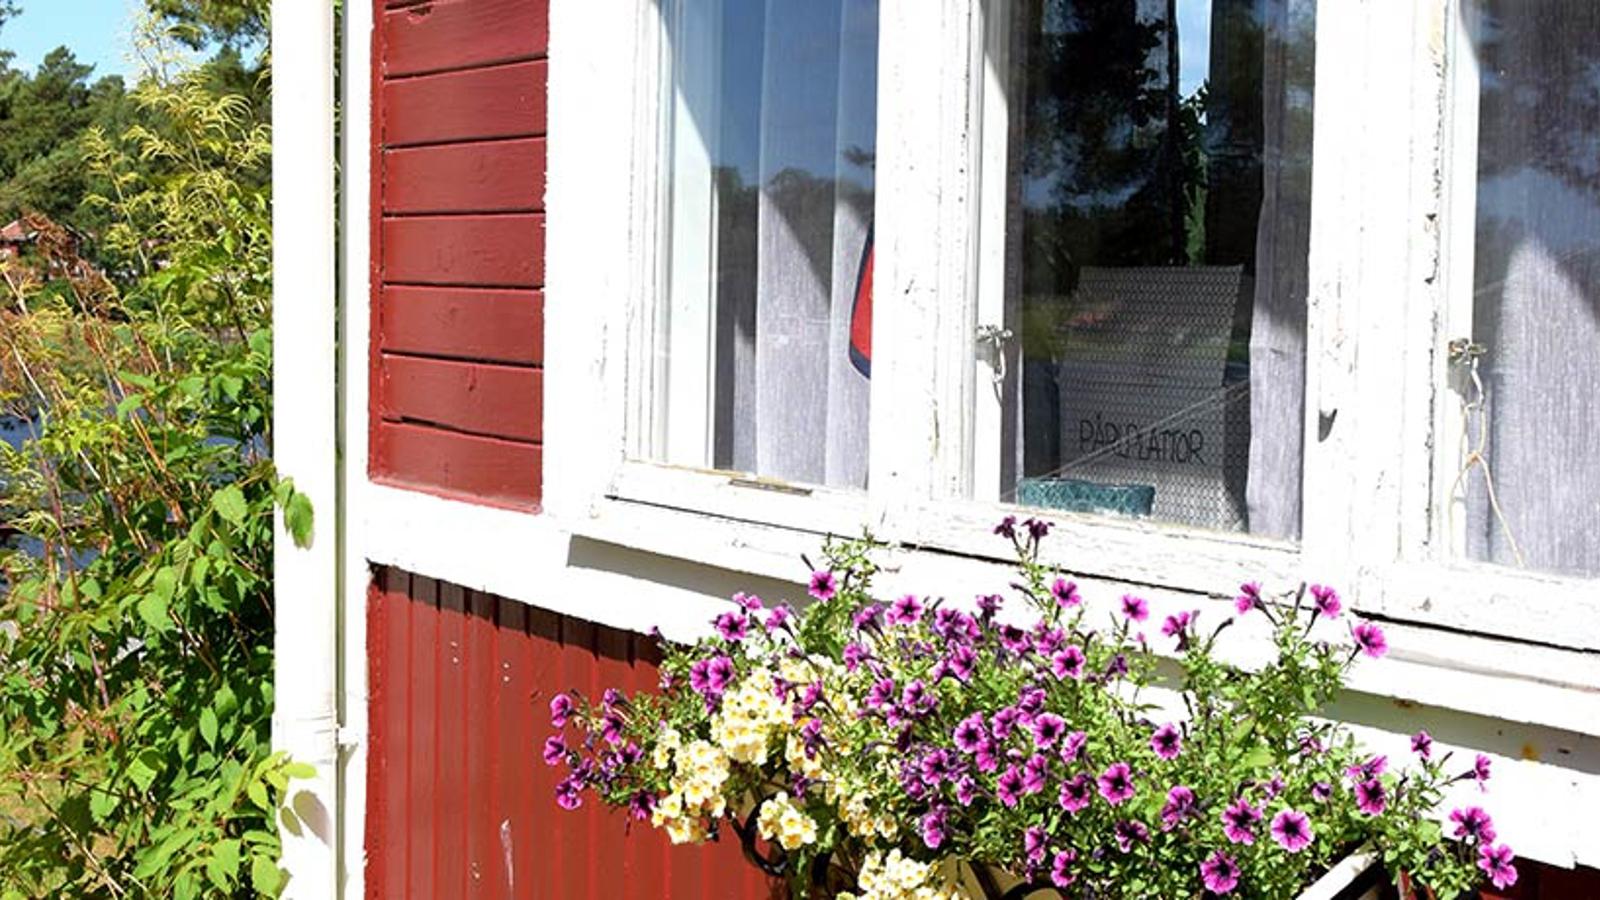 Hörnet av ett rött hus. På fasaden hänger det en kruka med lila blomväxter.